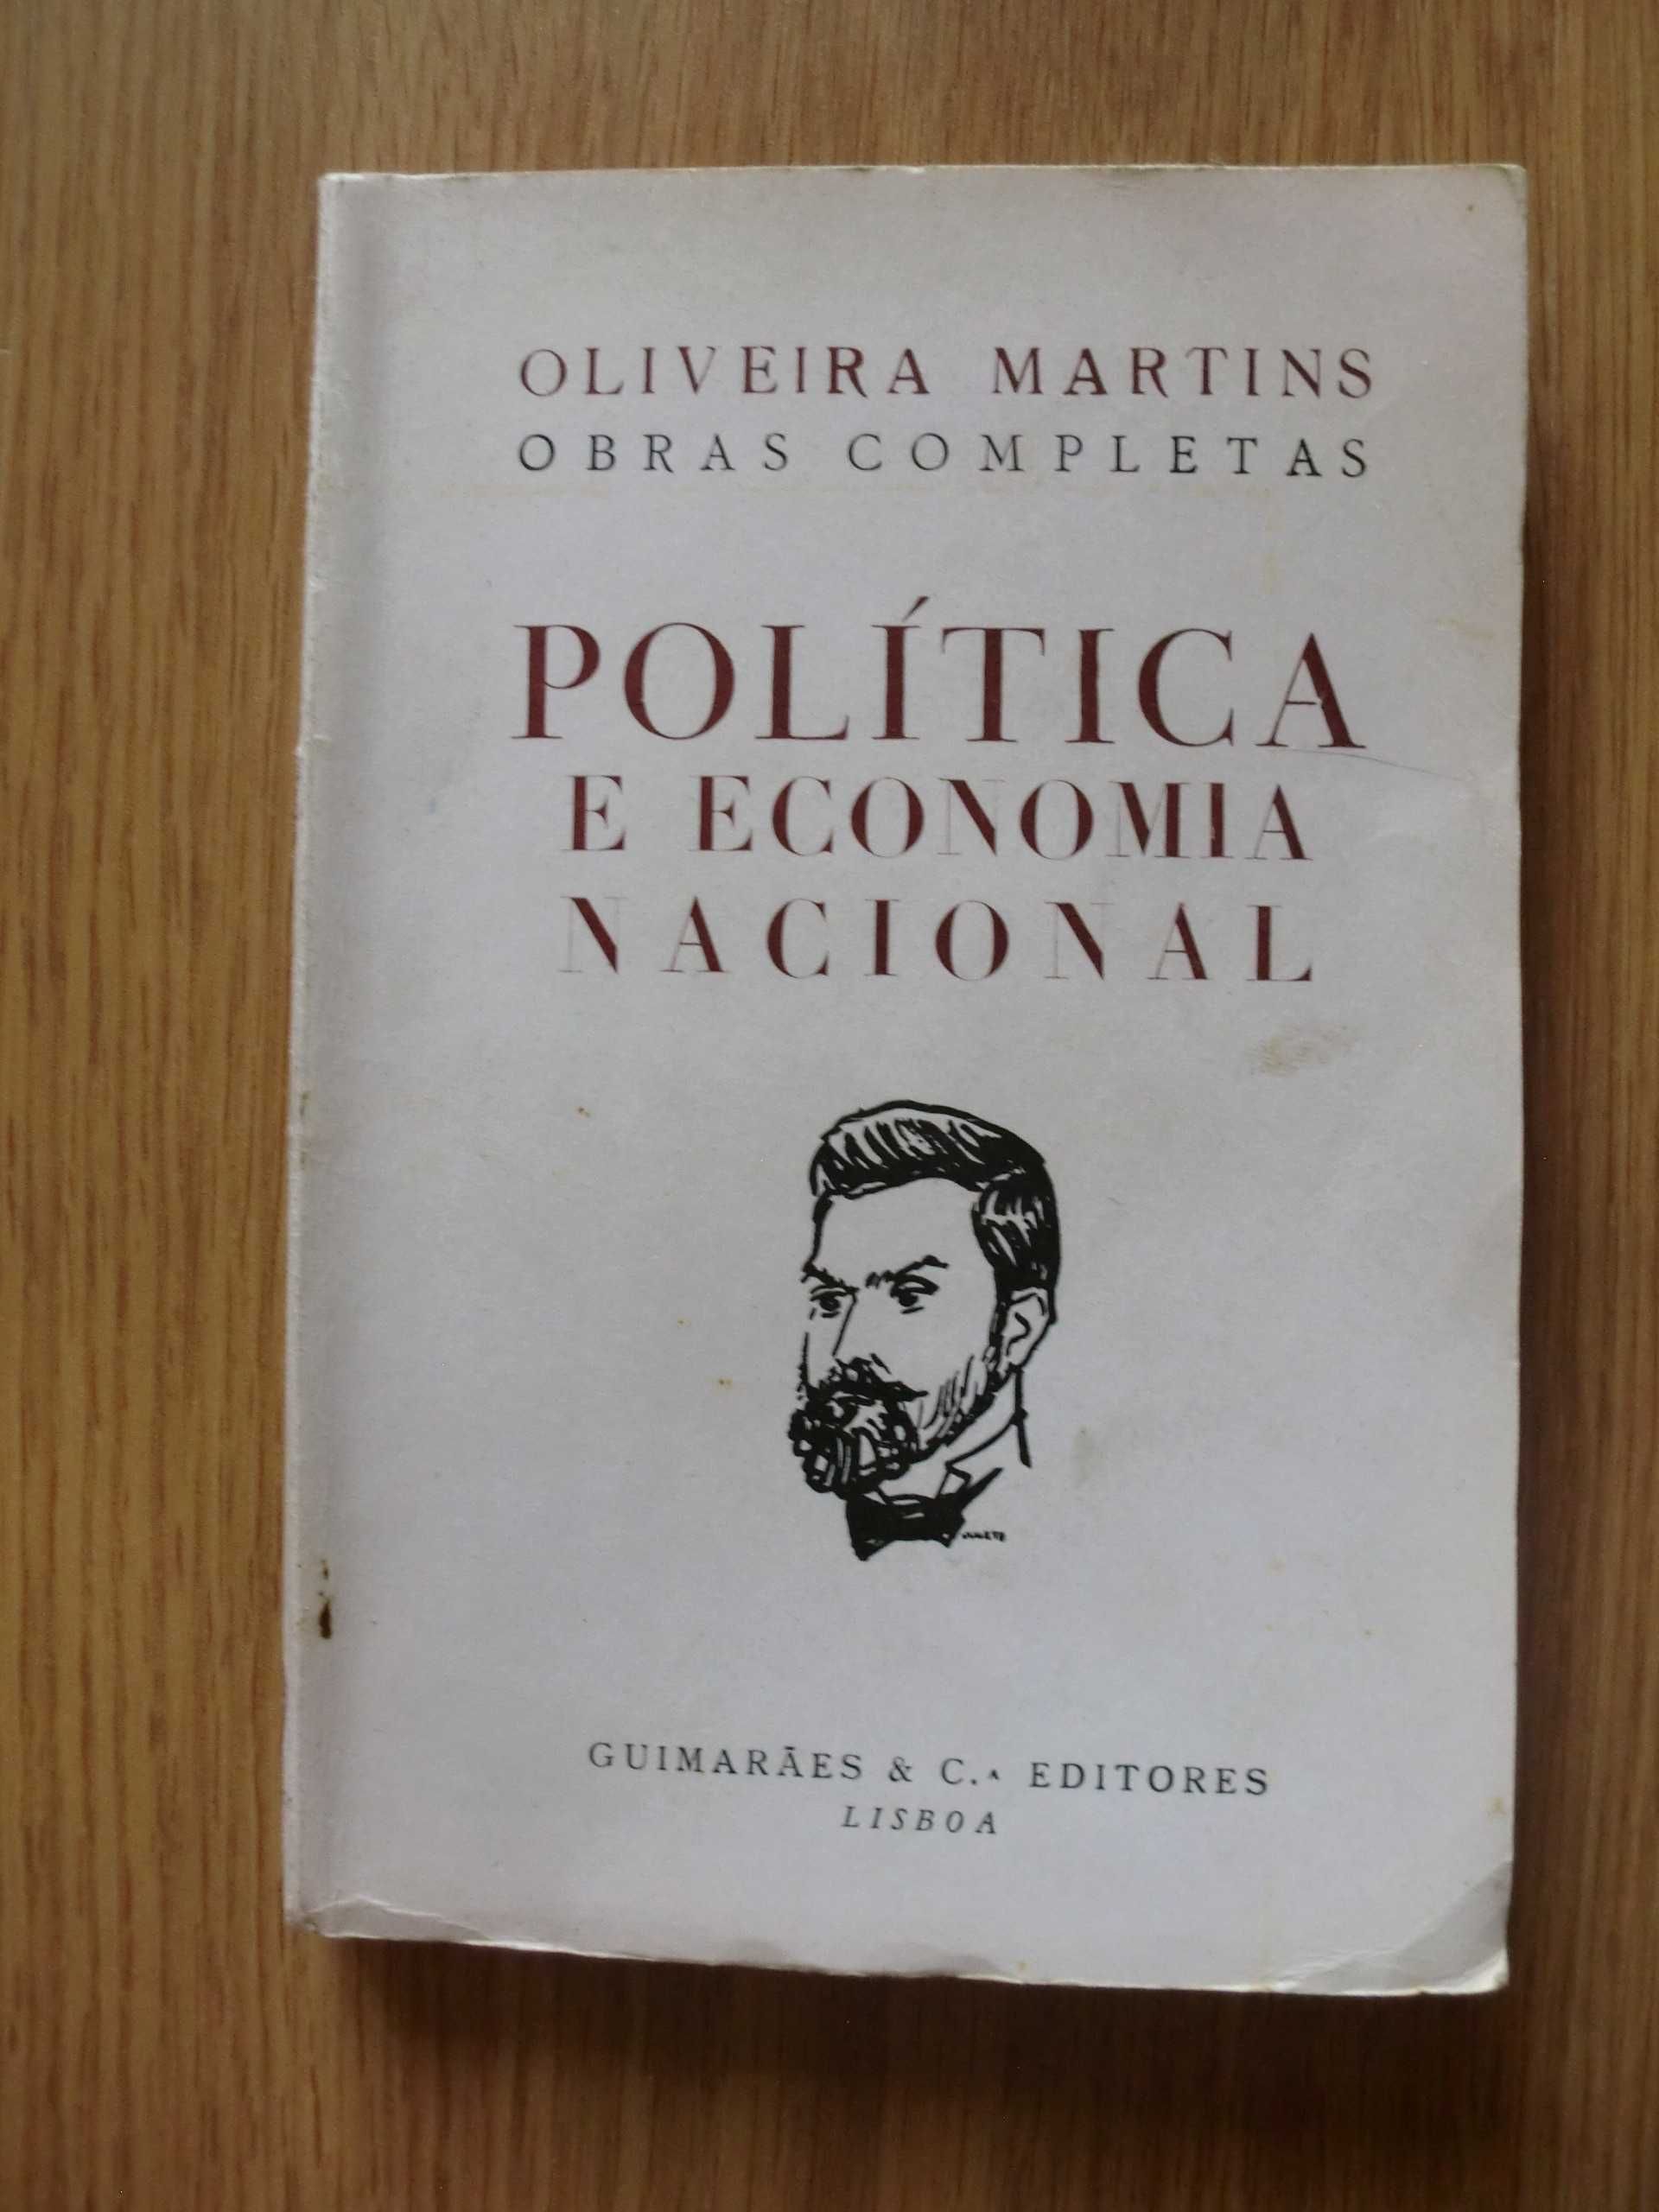 Política e Economia Nacional
de Oliveira Martins